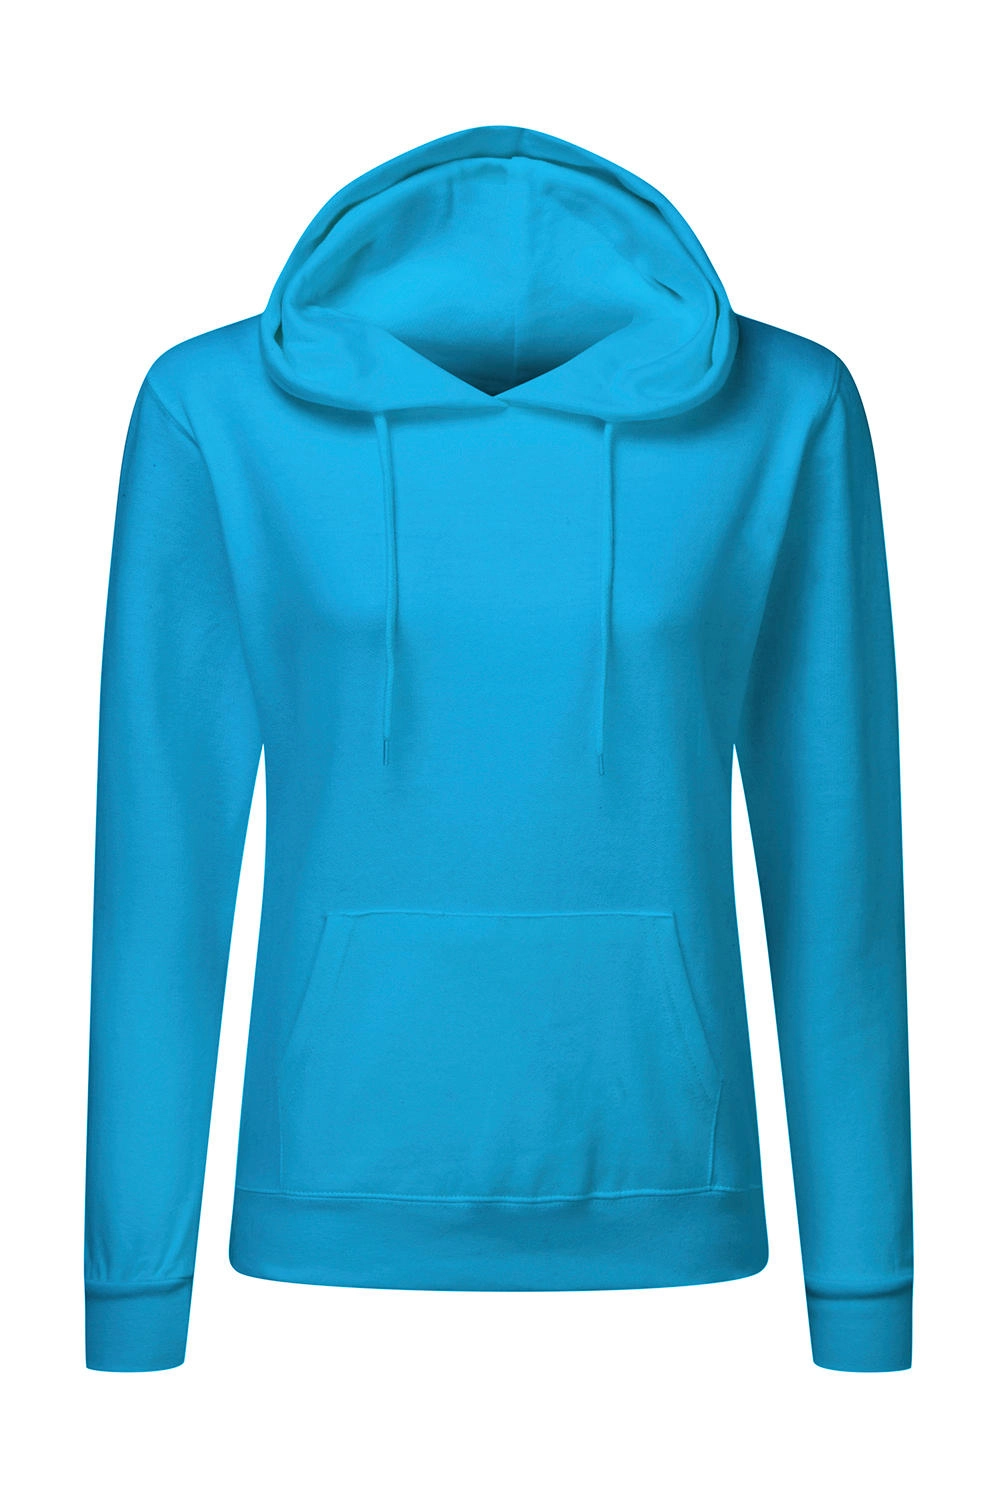 Hooded Sweatshirt Women zum Besticken und Bedrucken in der Farbe Turquoise mit Ihren Logo, Schriftzug oder Motiv.